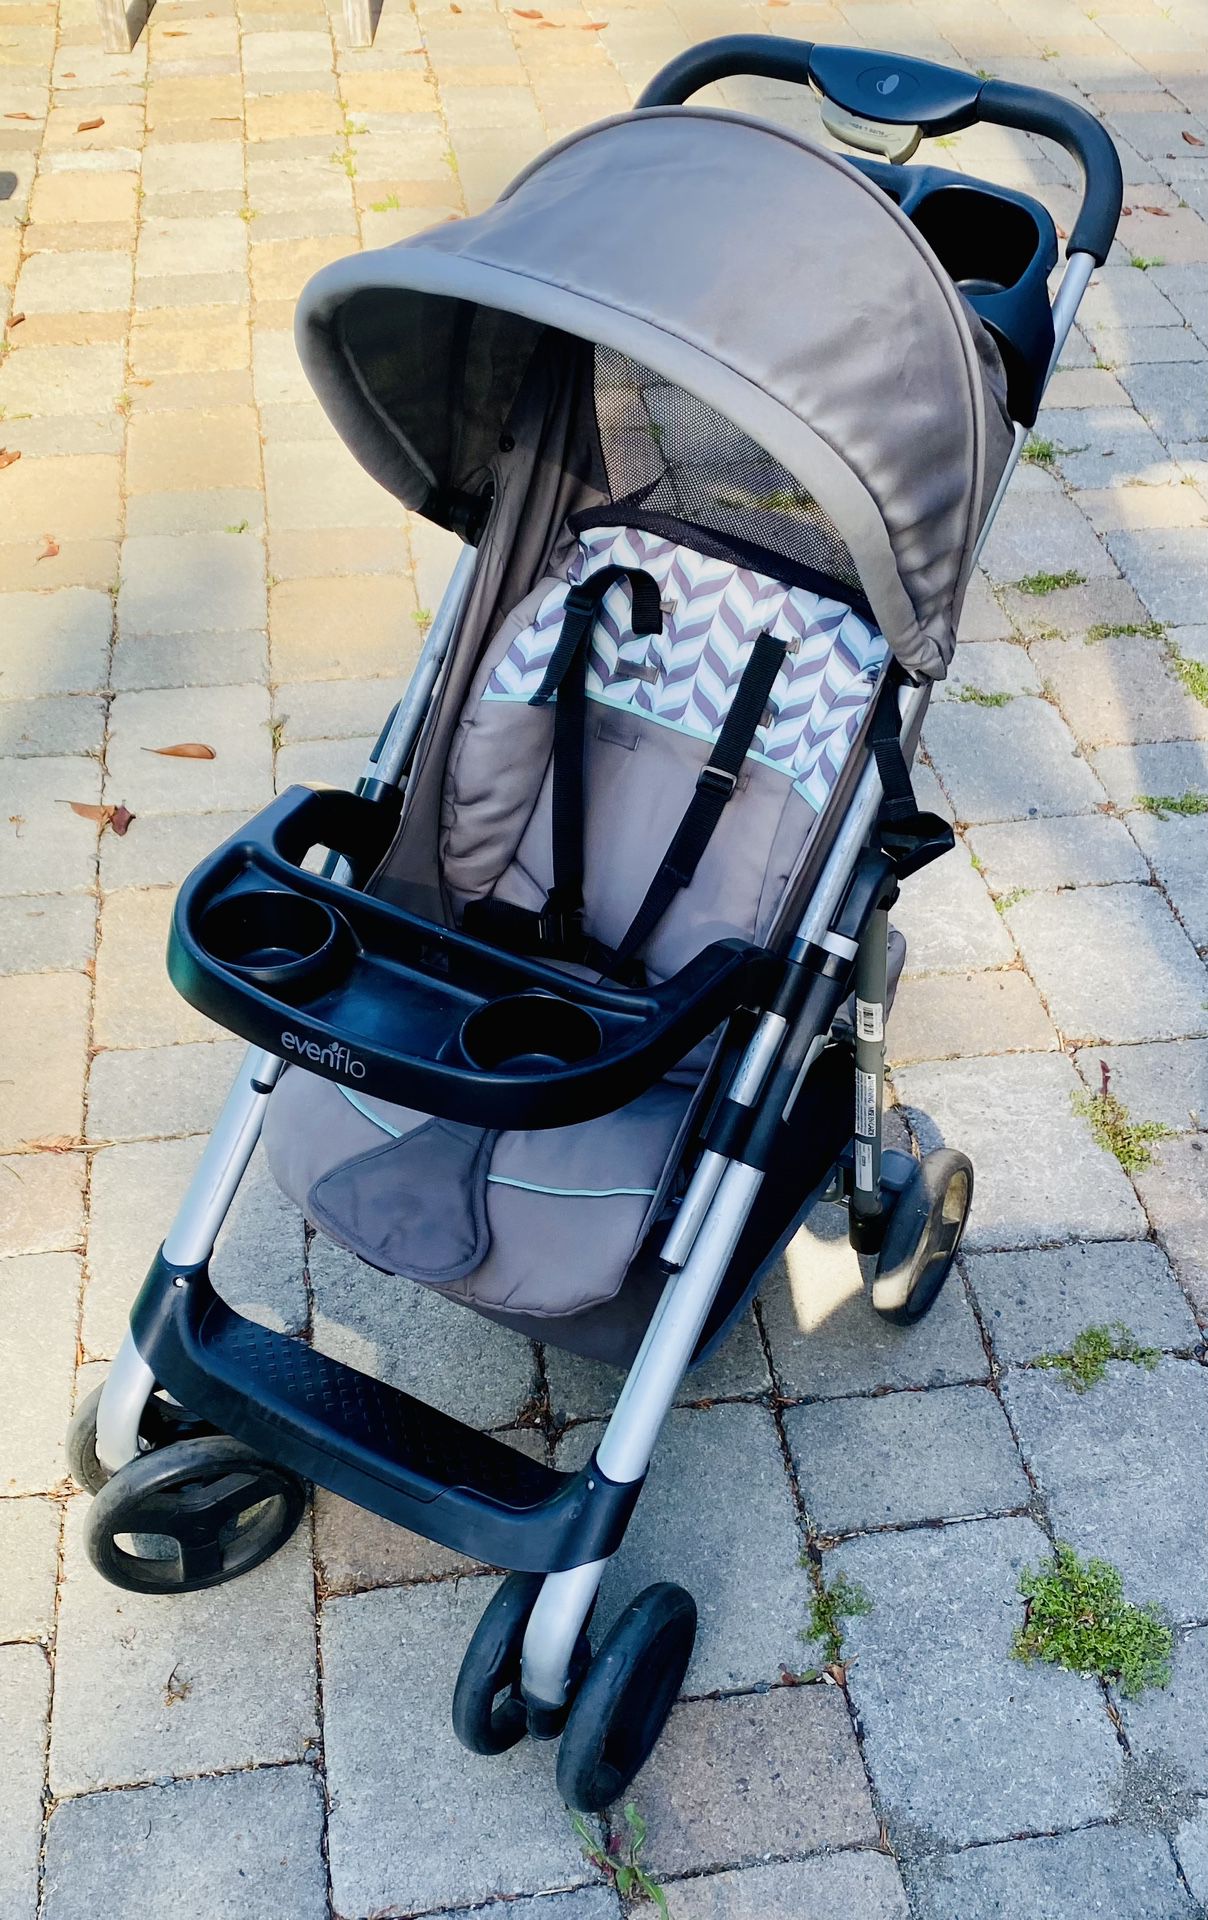 Used EvenFlow Infant/Toddler Stroller